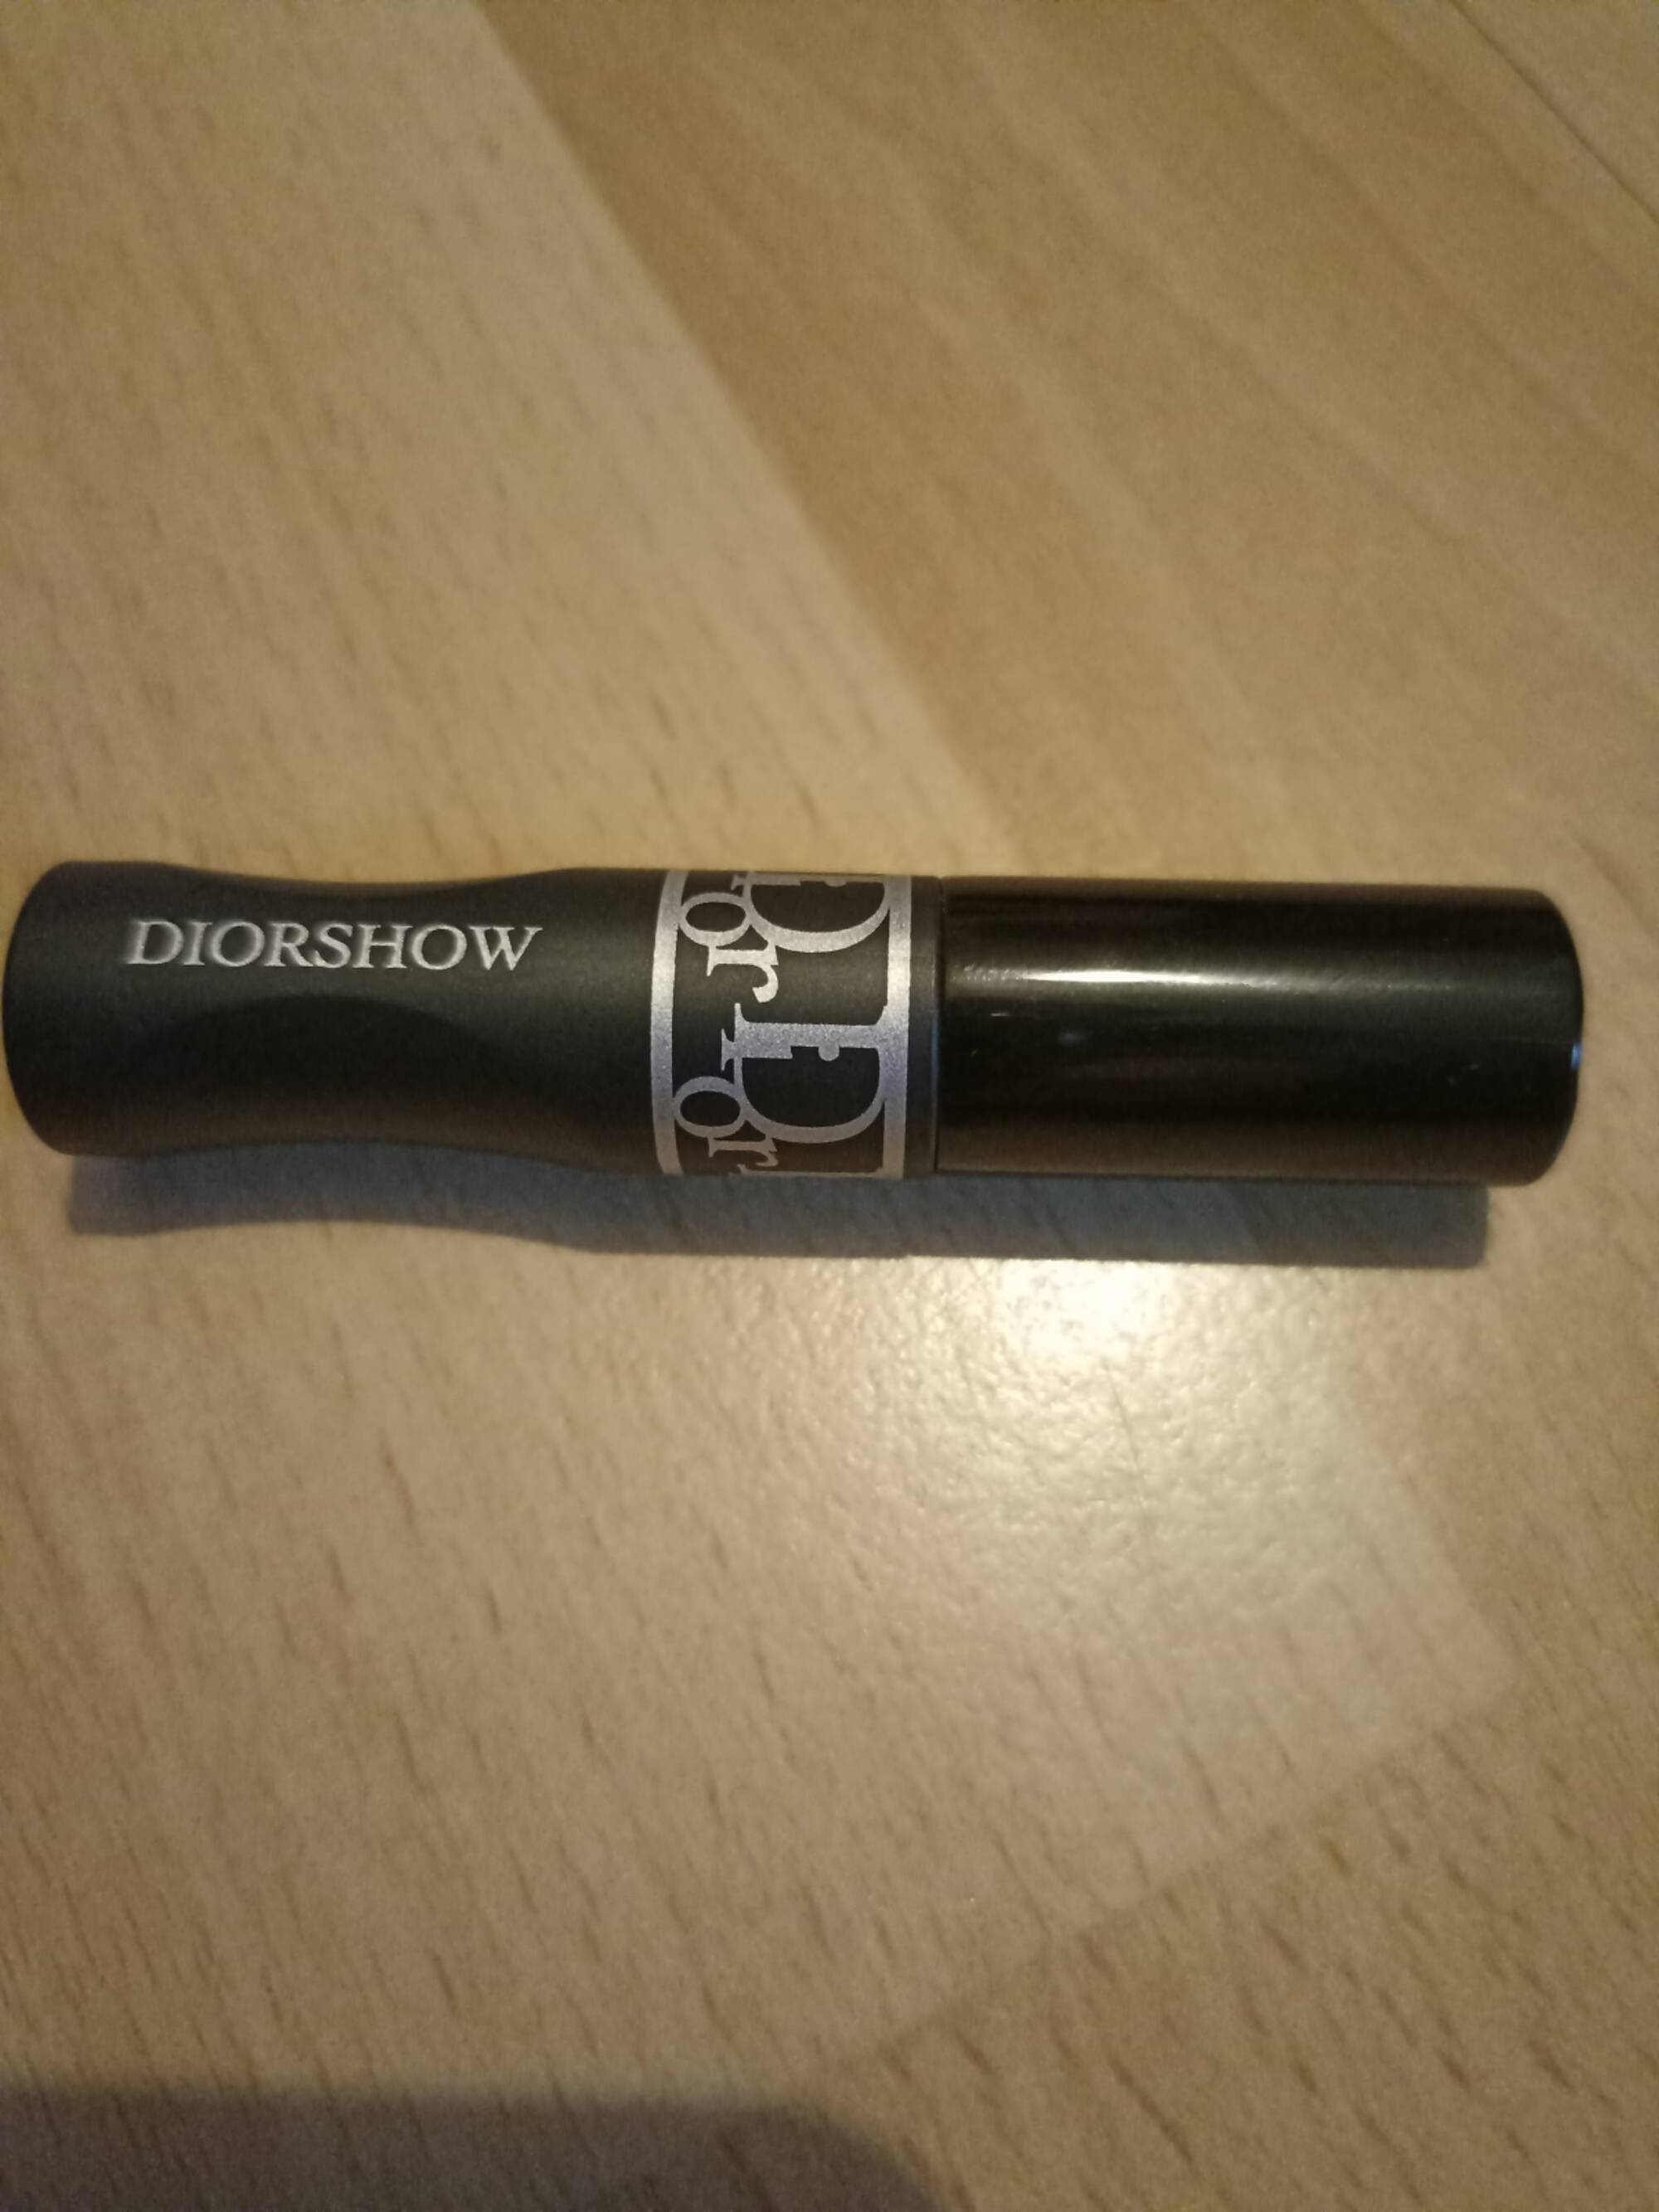 DIOR - Diorshow Pump 'N' volume - Mascara